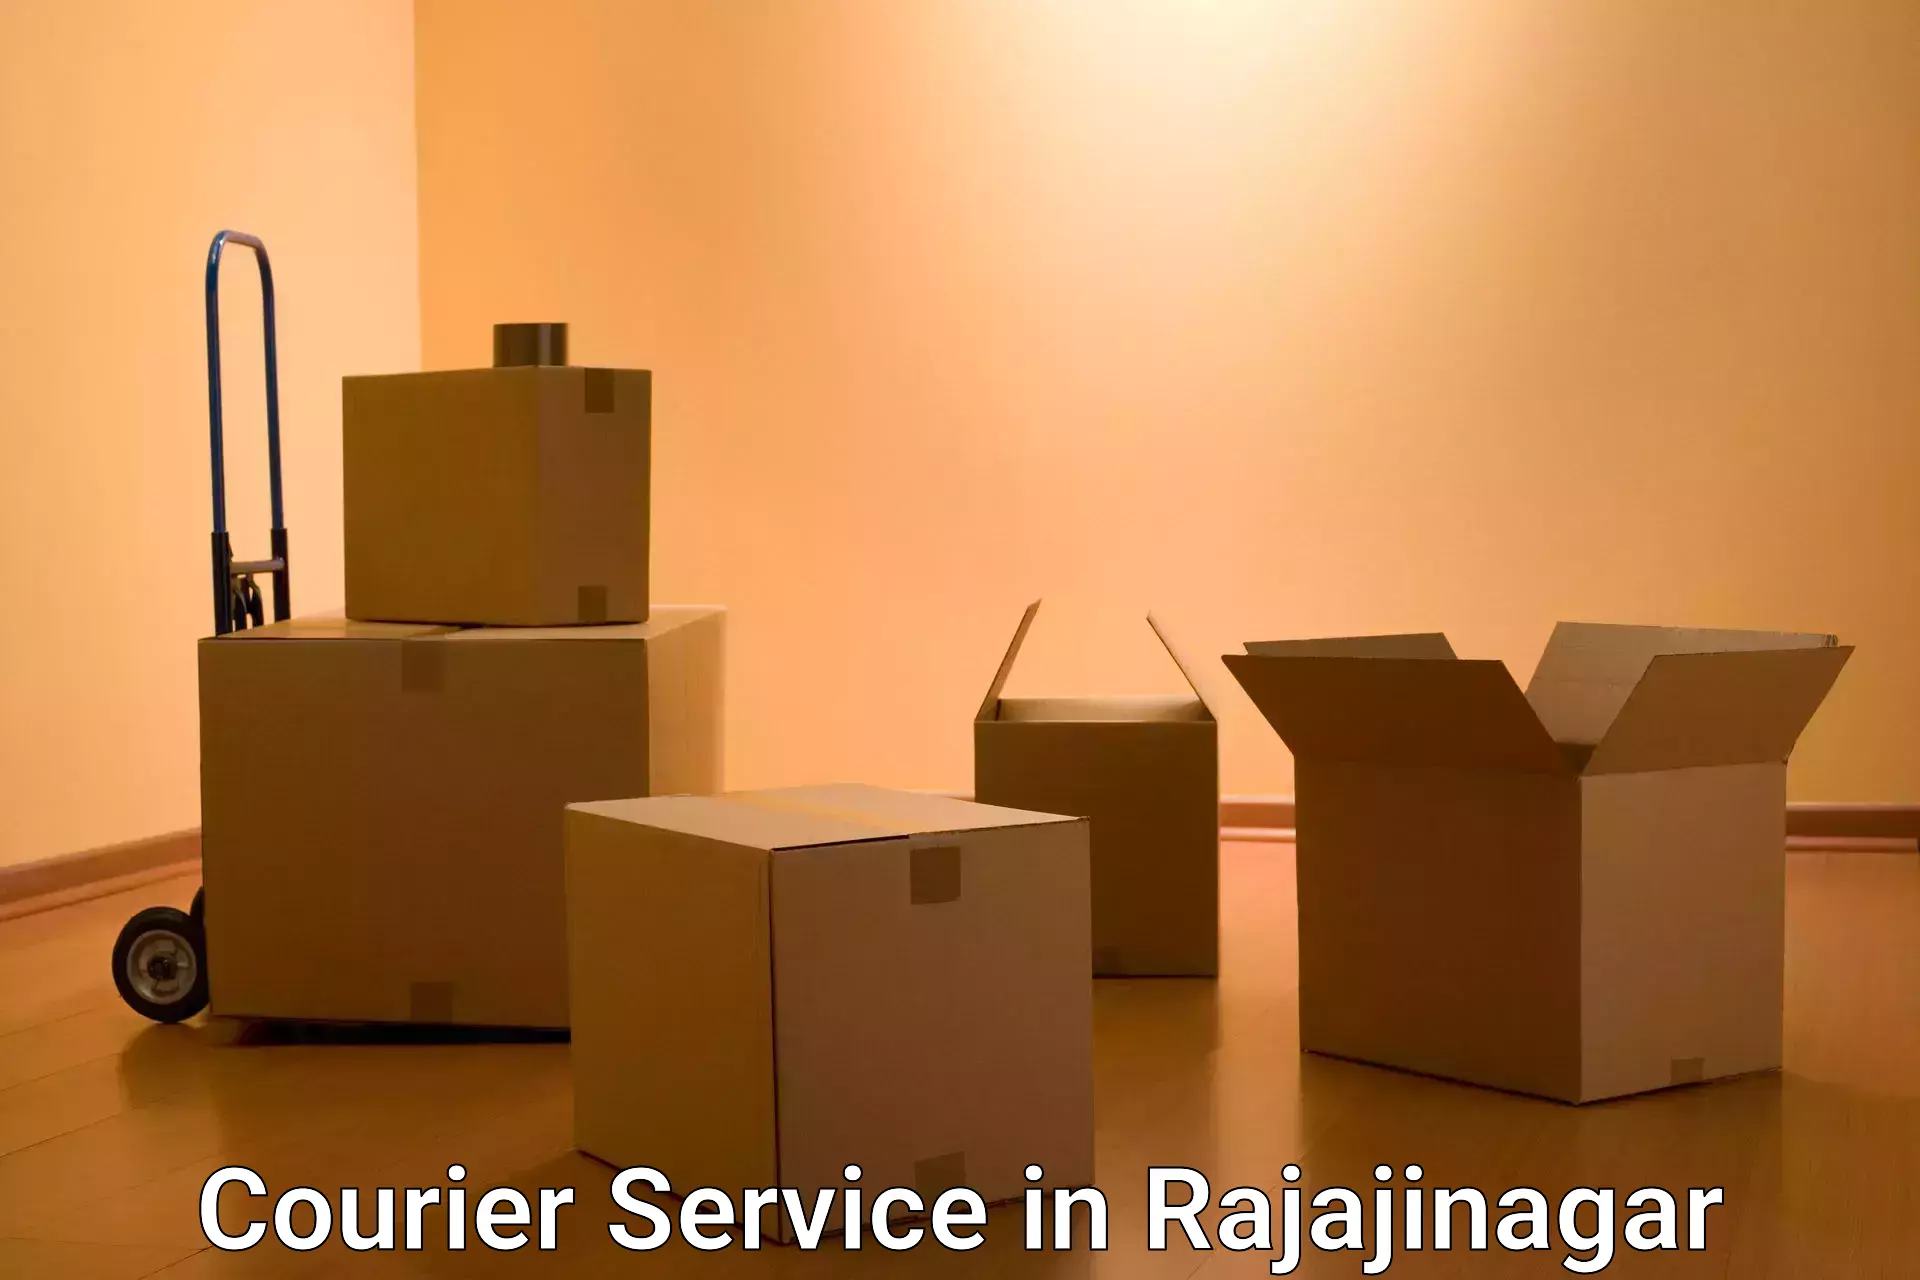 Reliable parcel services in Rajajinagar